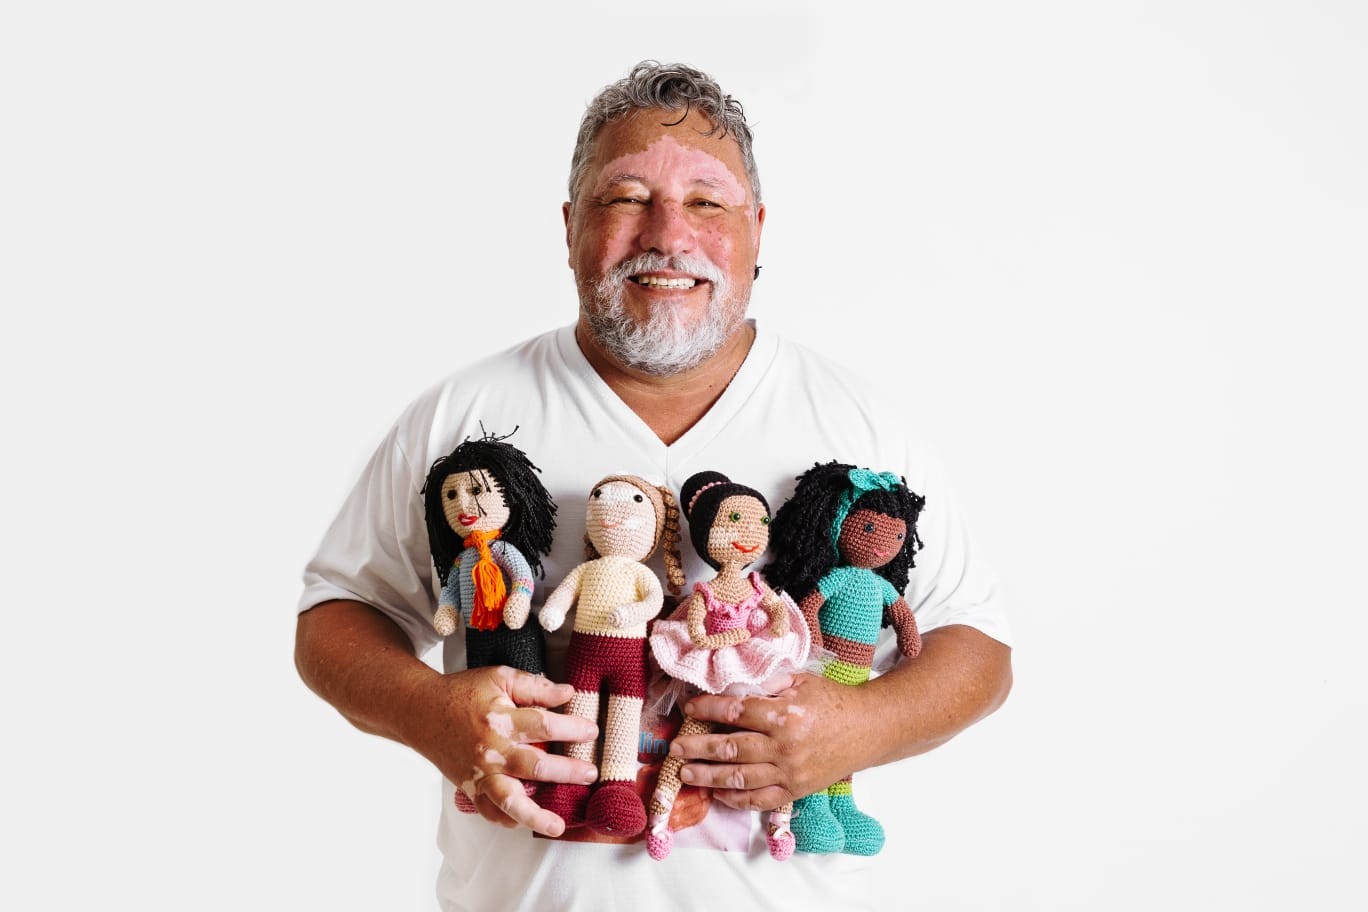 Idoso confecciona bonecas com manchas de vitiligo e faz sucesso até no exterior: ‘Levar representatividade para as crianças’